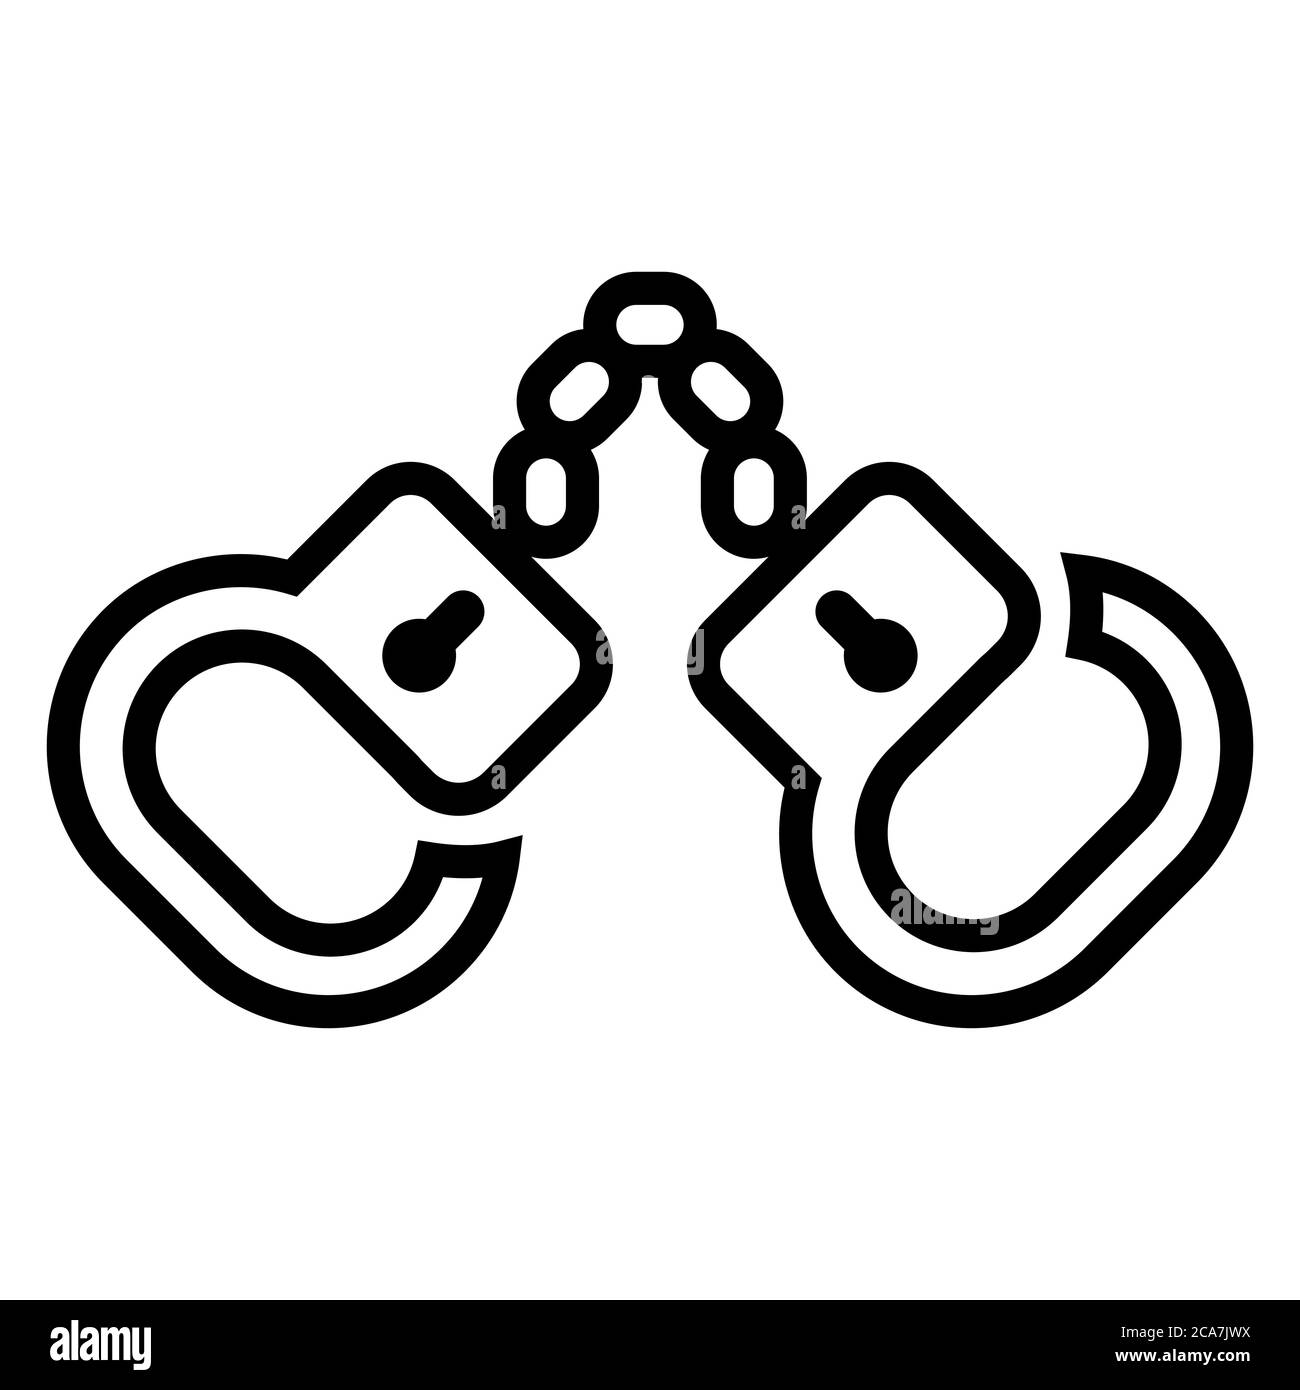 Schwarzes Handschellen-Symbol auf weißem Hintergrund. Lineare Vektordarstellung Stock Vektor